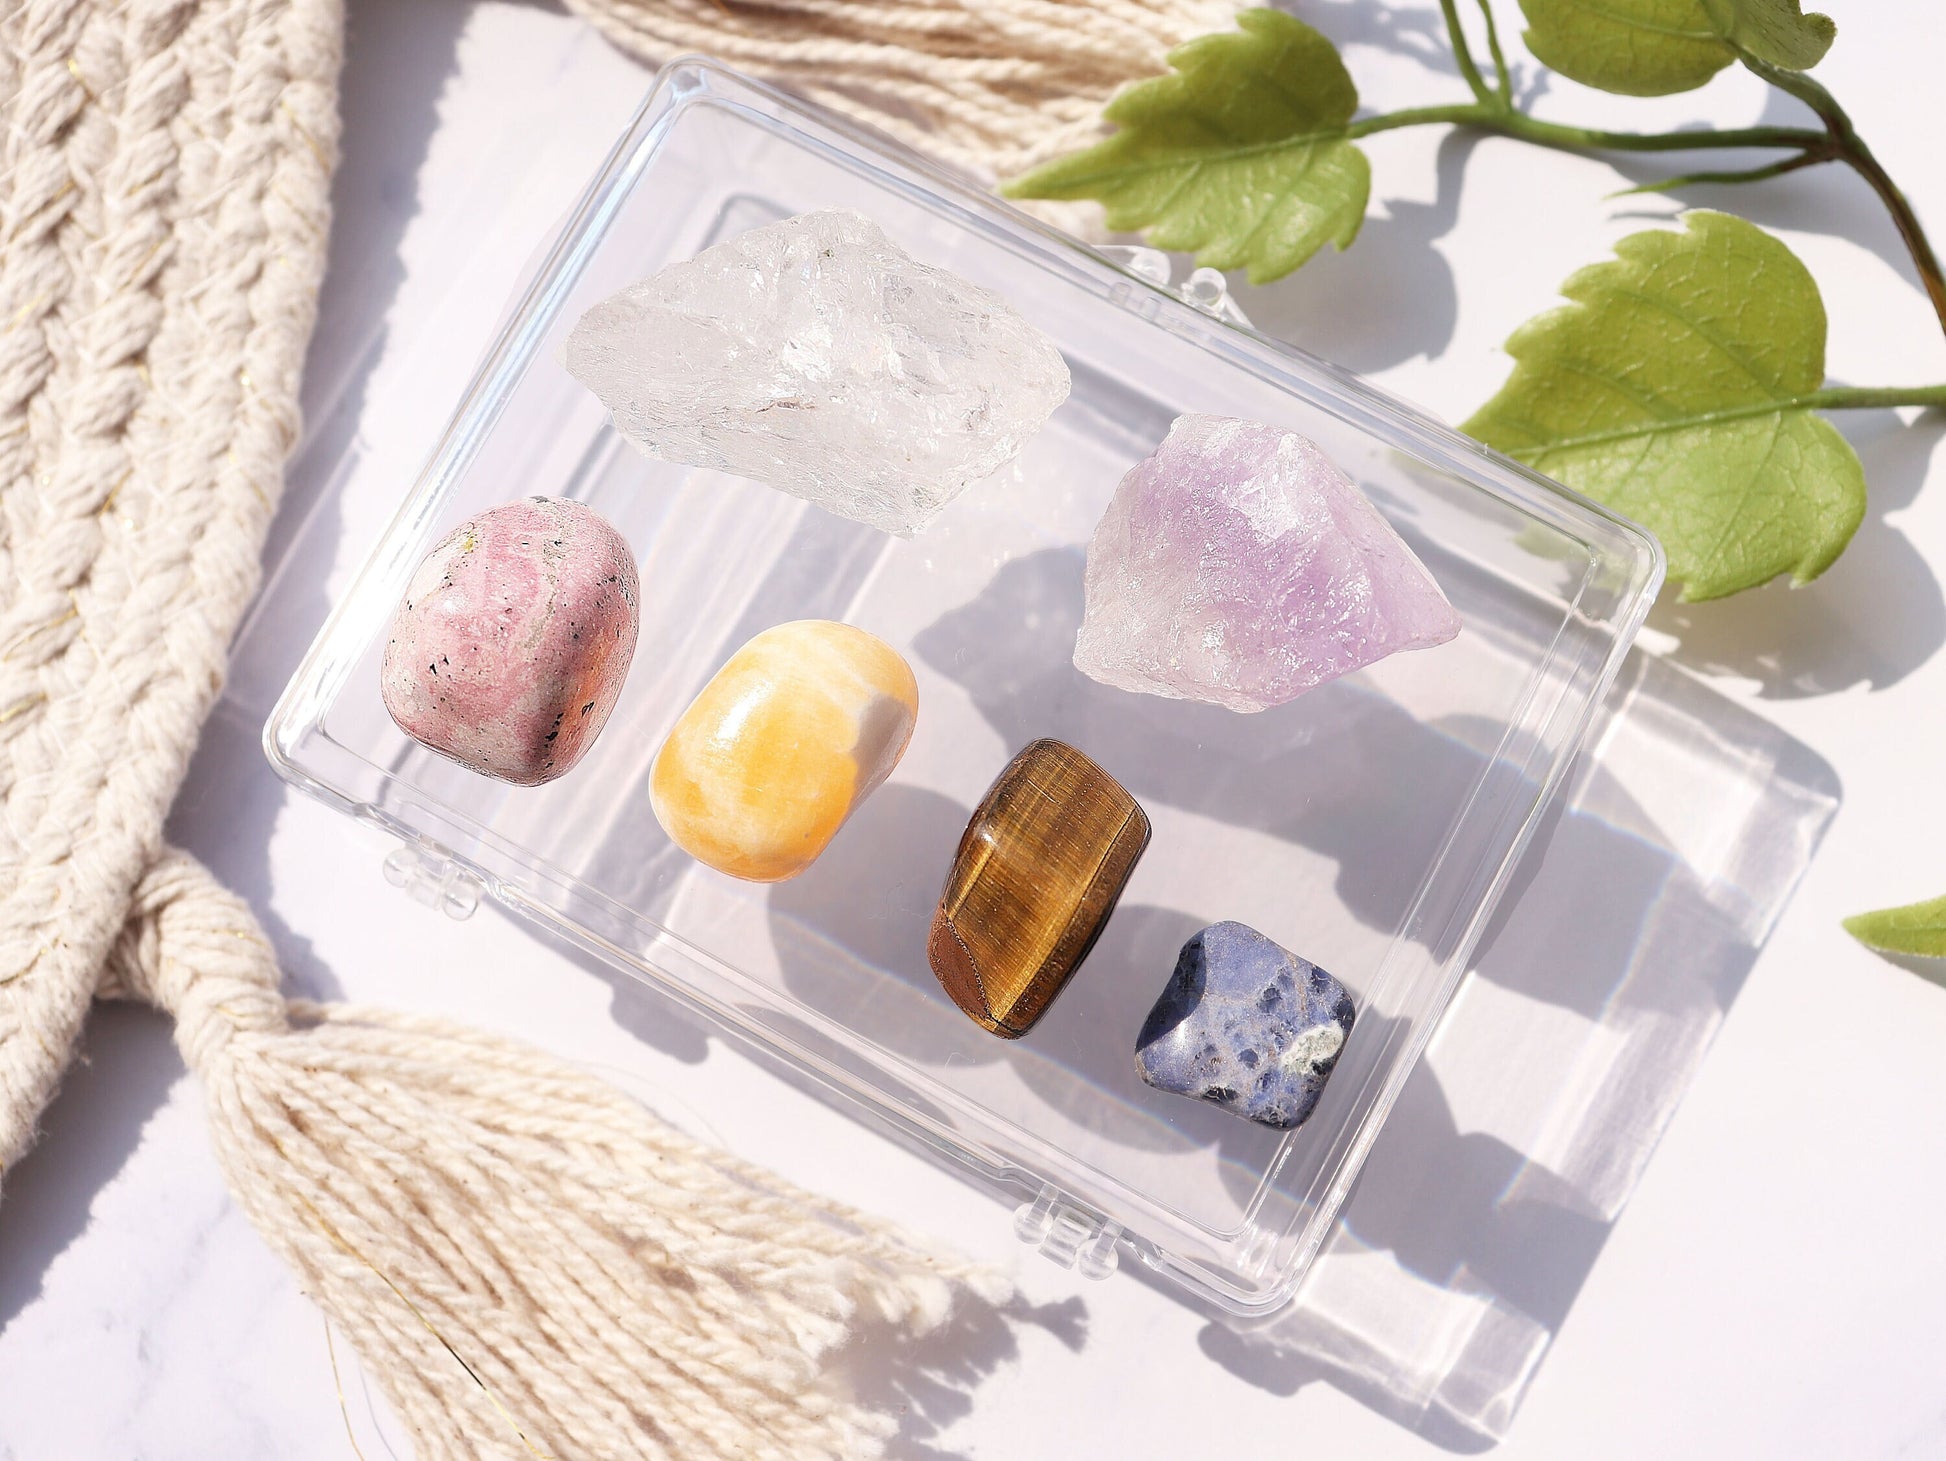 Pocket Meditating Crystals Kit, Gemstones for Creativity, Strength, Serenity, Beginner Crystal Kits